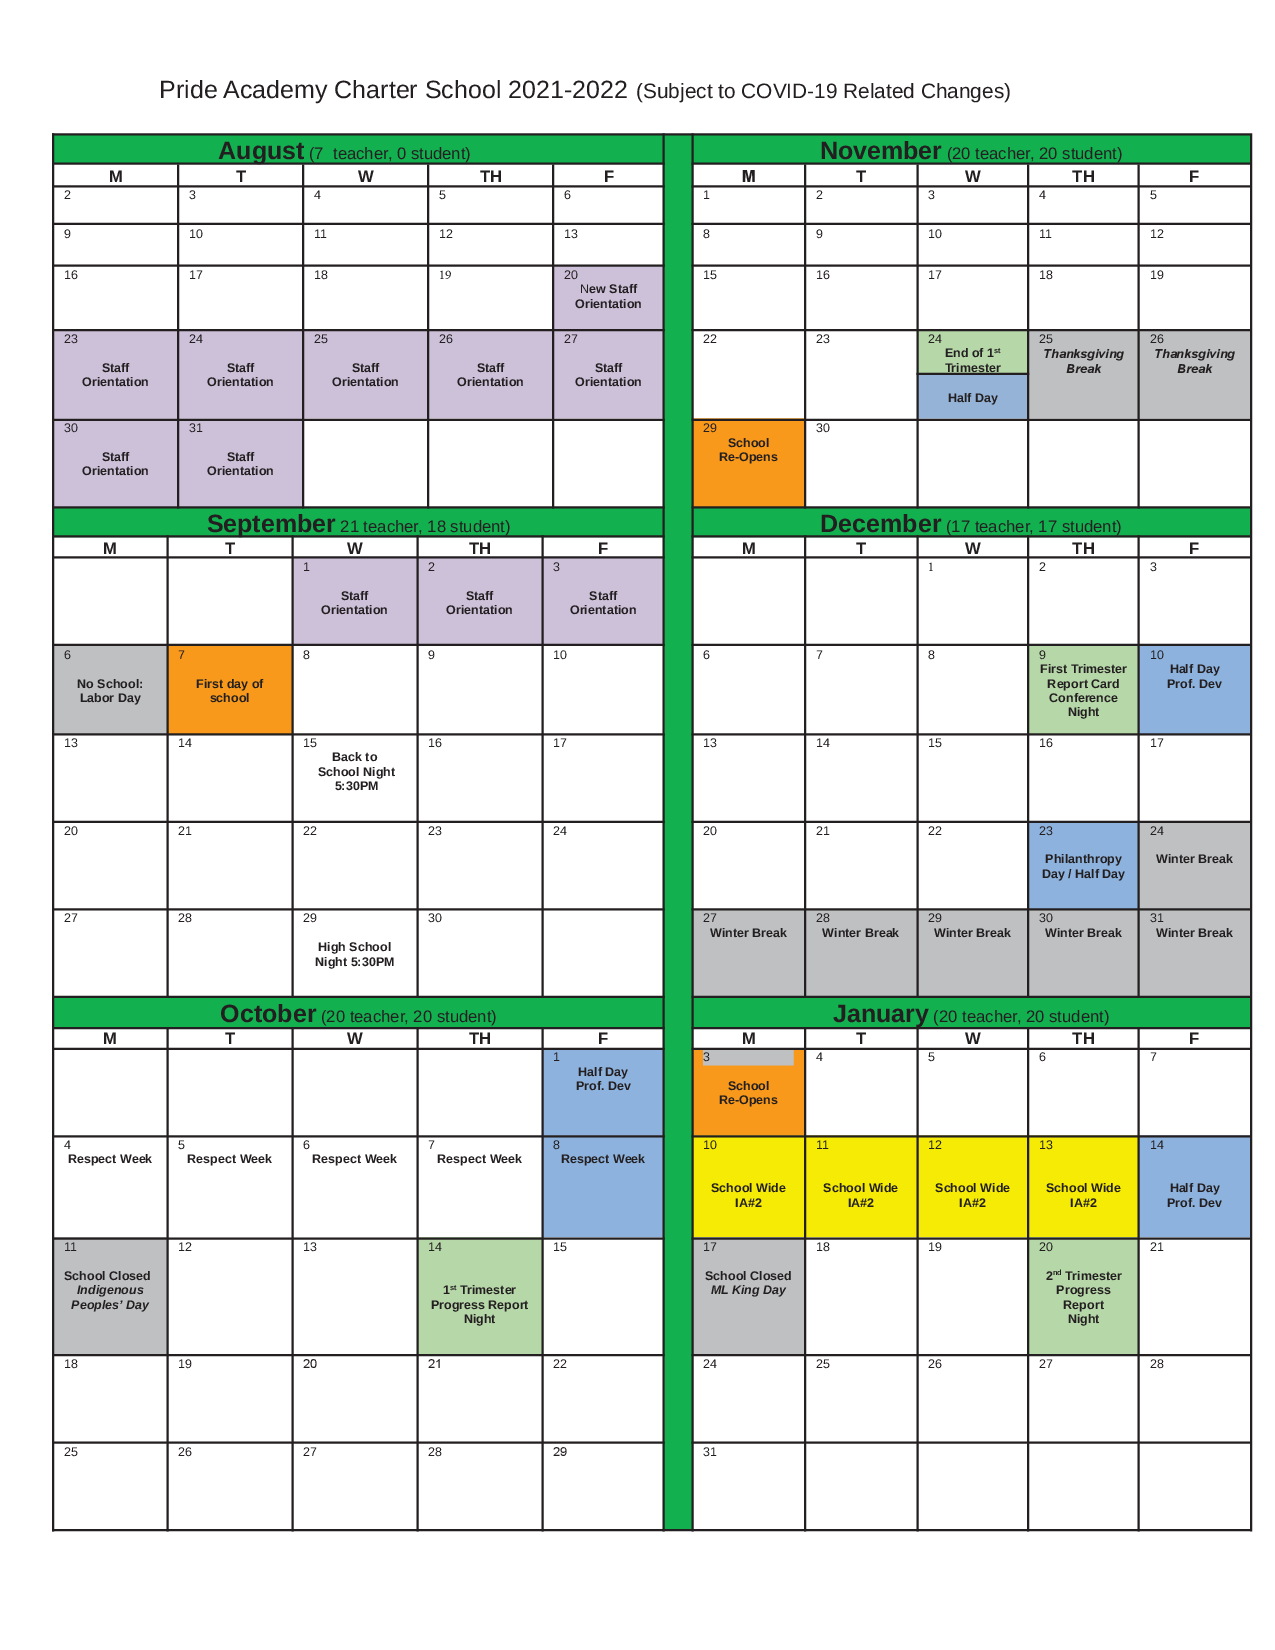 School Calendar 20212022 Pride Academy